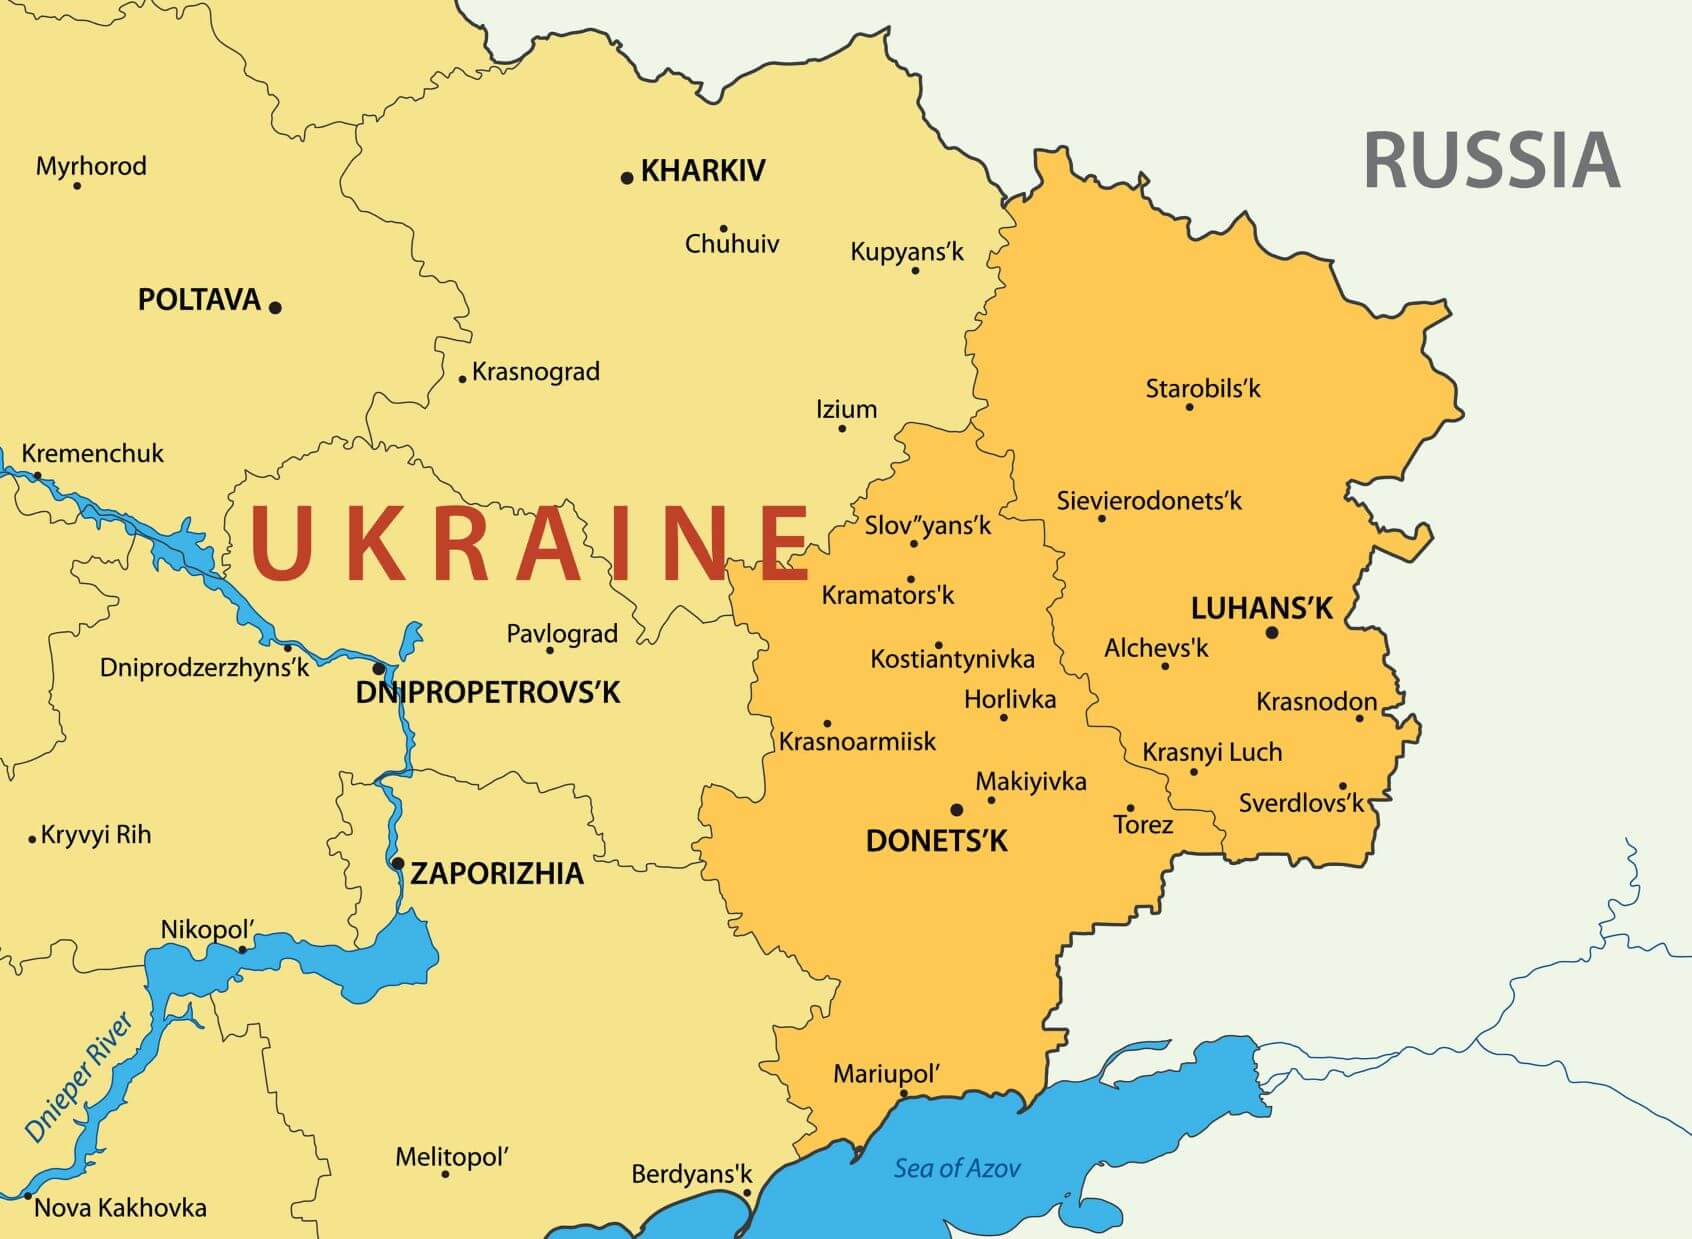 Donetsk and Luhansk